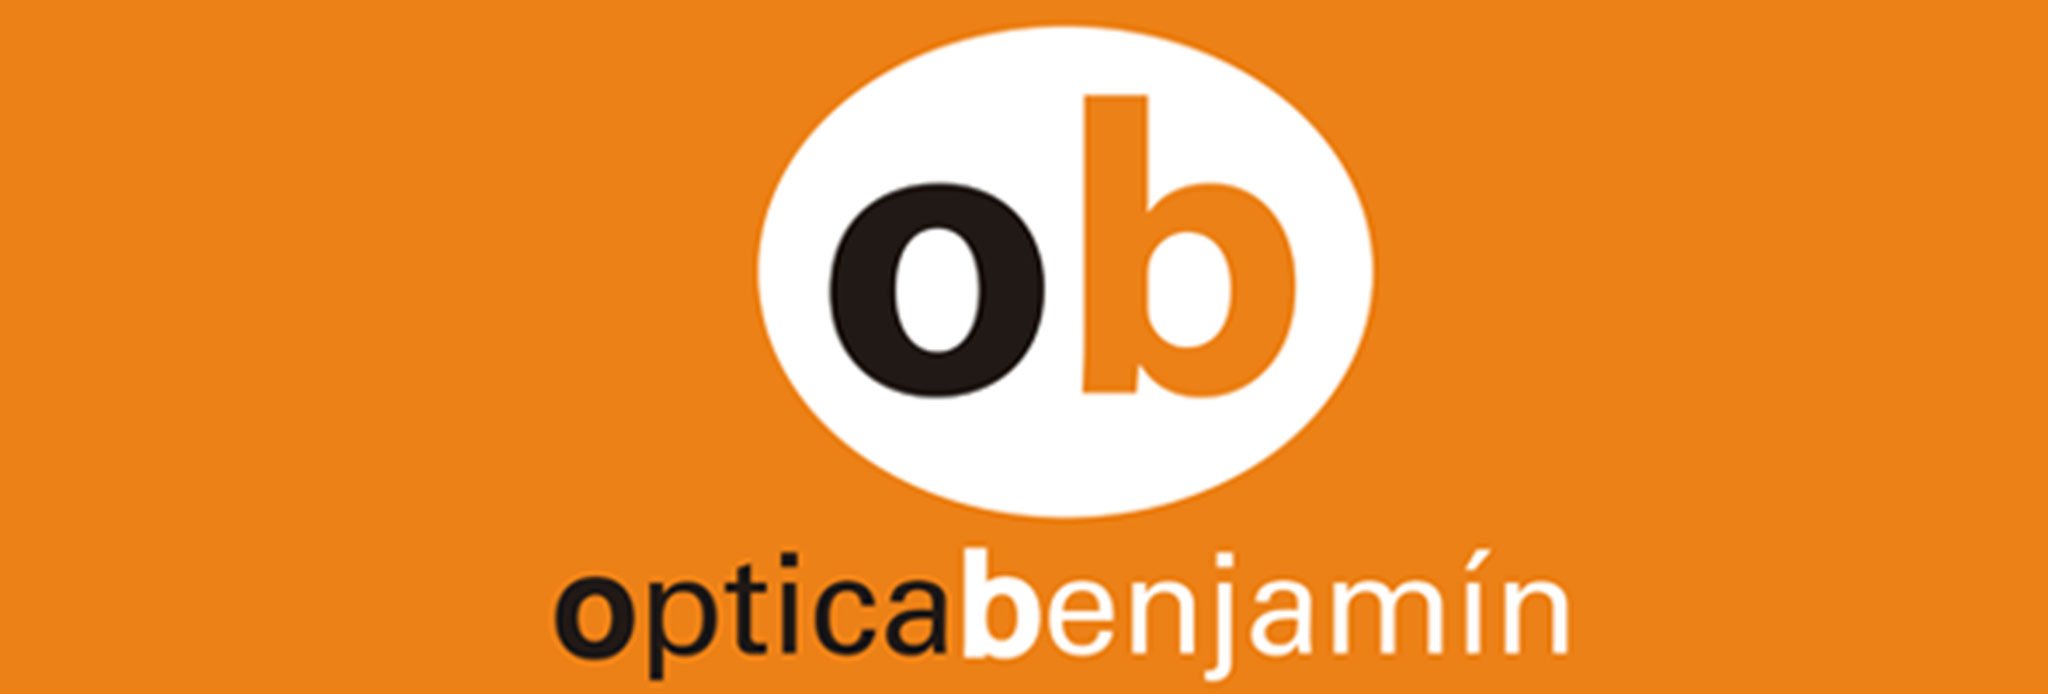 Logotipo de Óptica Benjamín